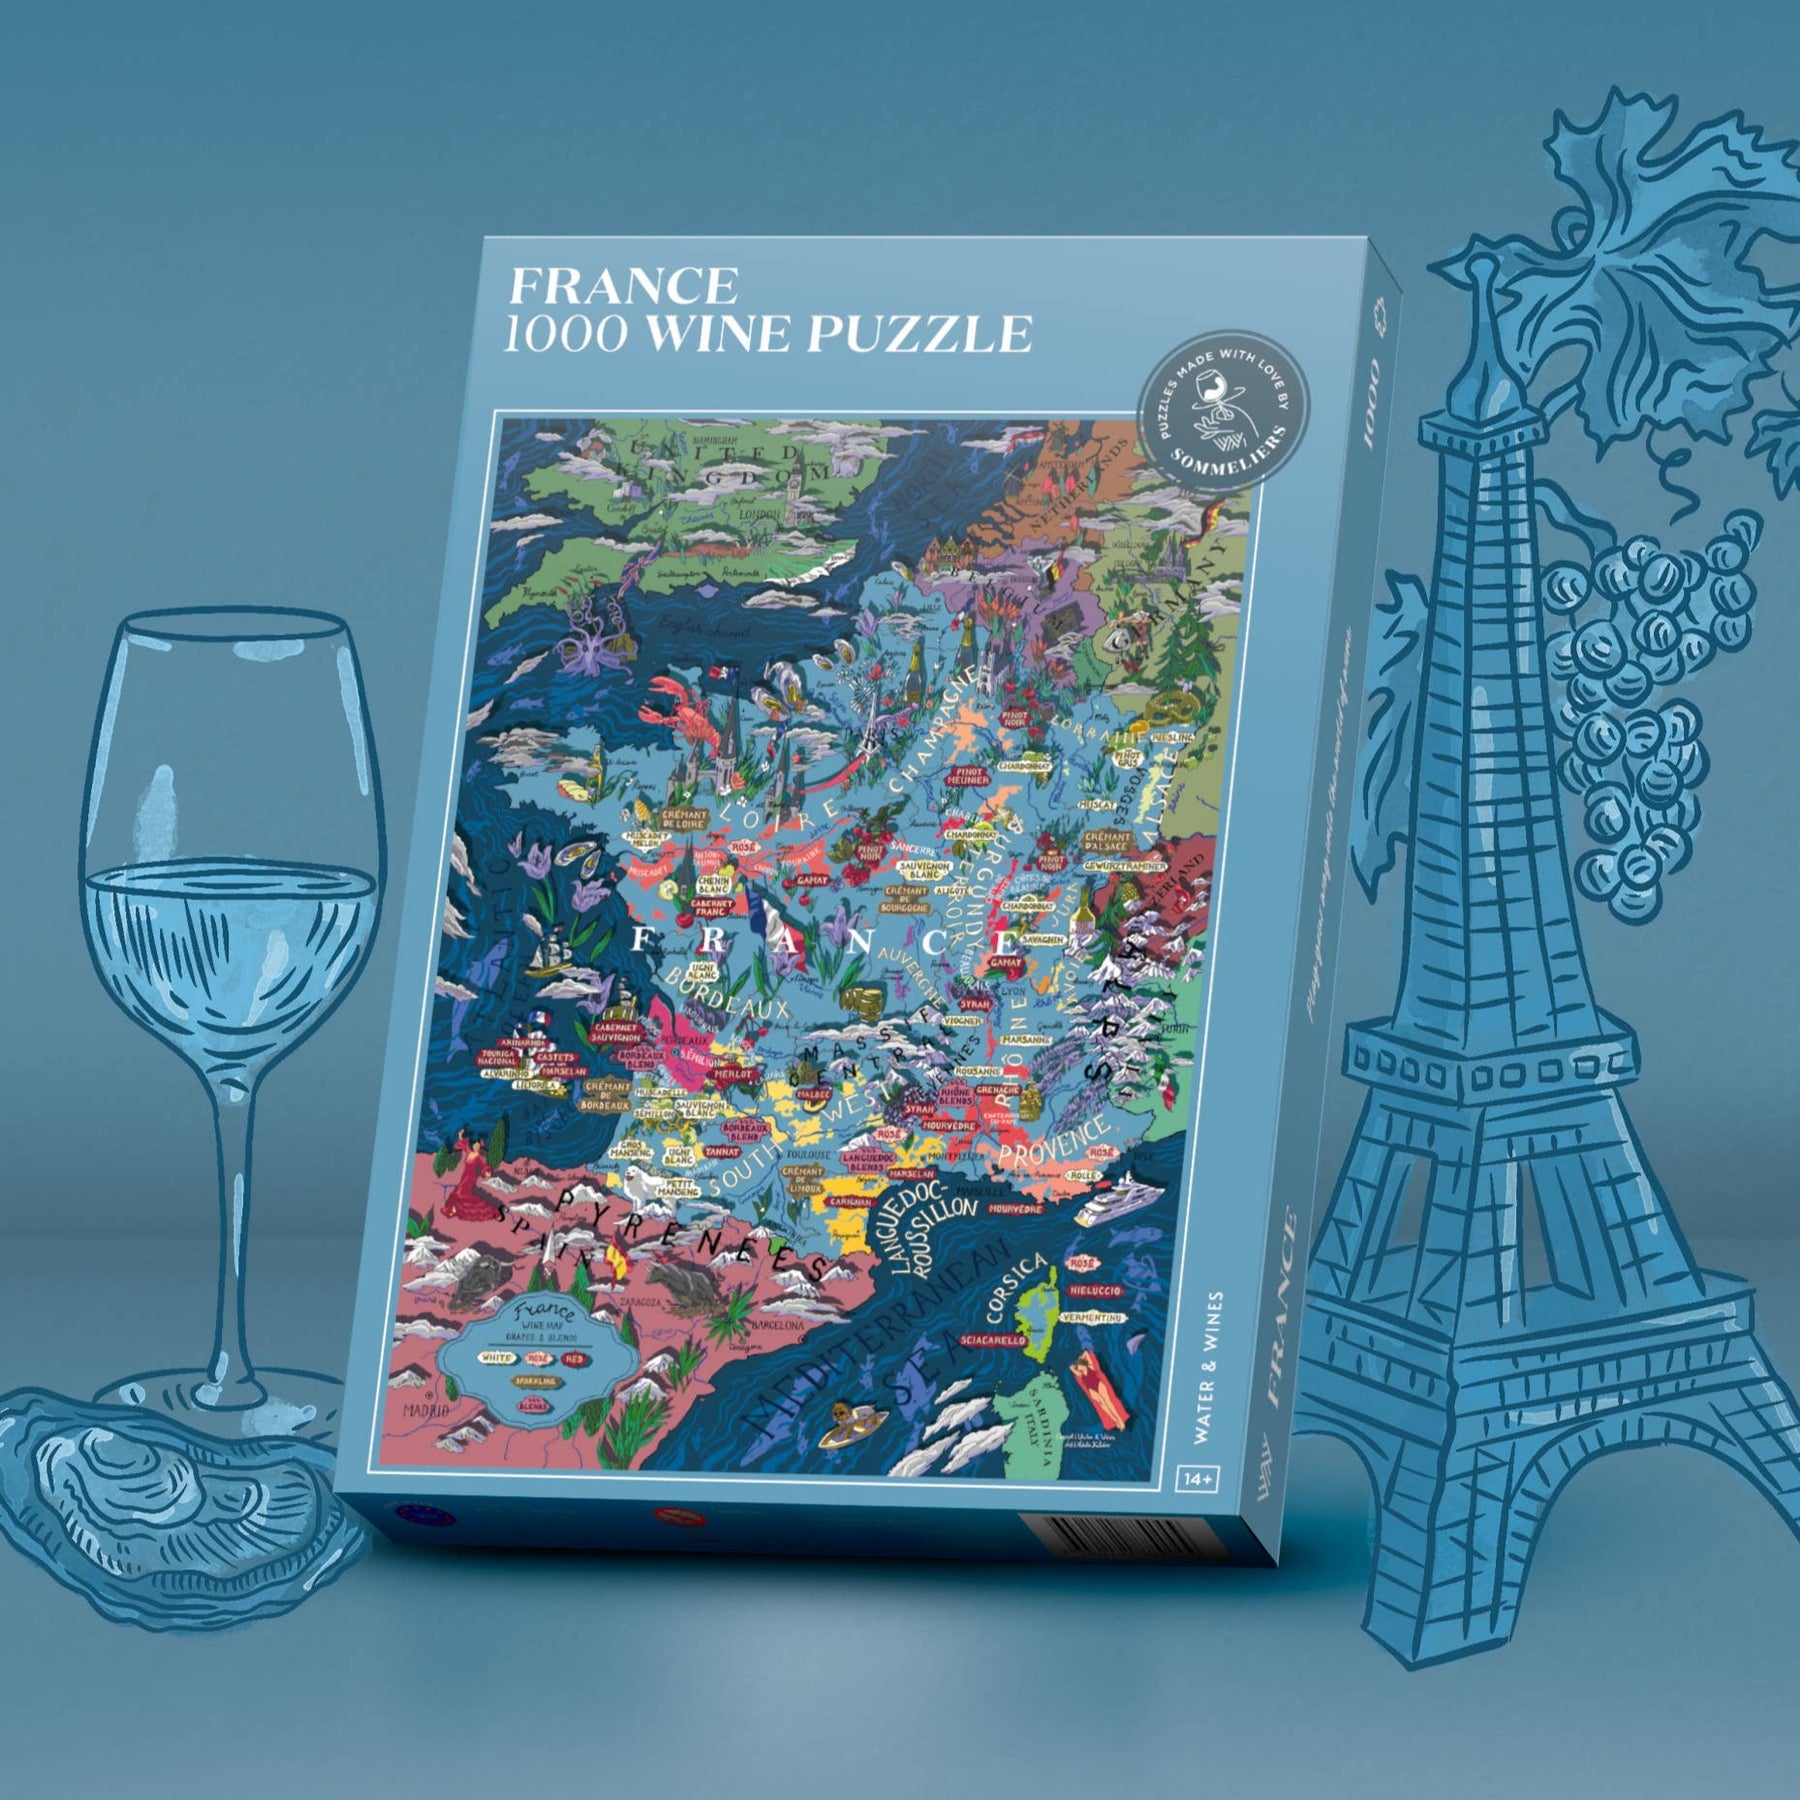 Wine Puzzle - France - Puzzles - Wineandbarrels A/S